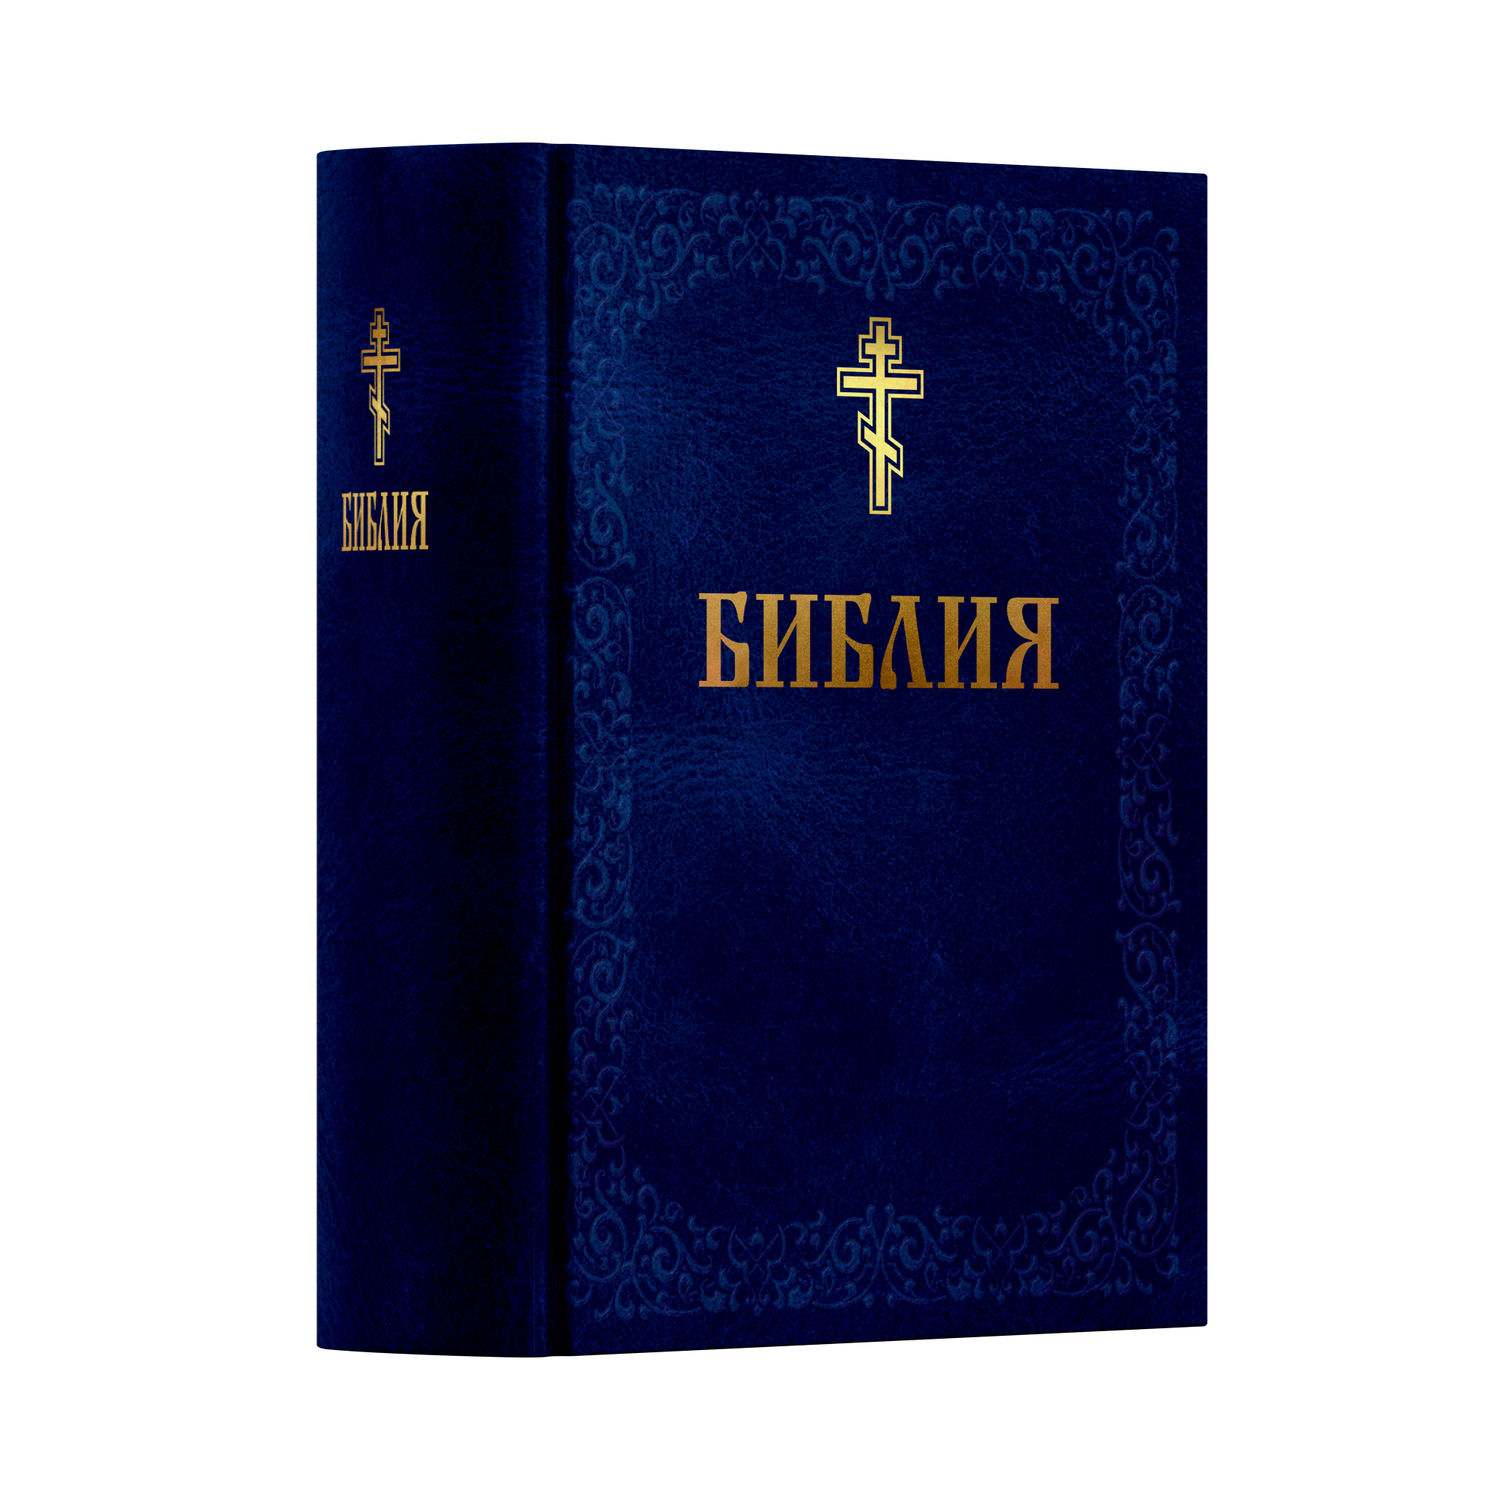 Книга Харвест Книга православная Библия Новый и Ветхий завет Священного Писания синяя - фото 1